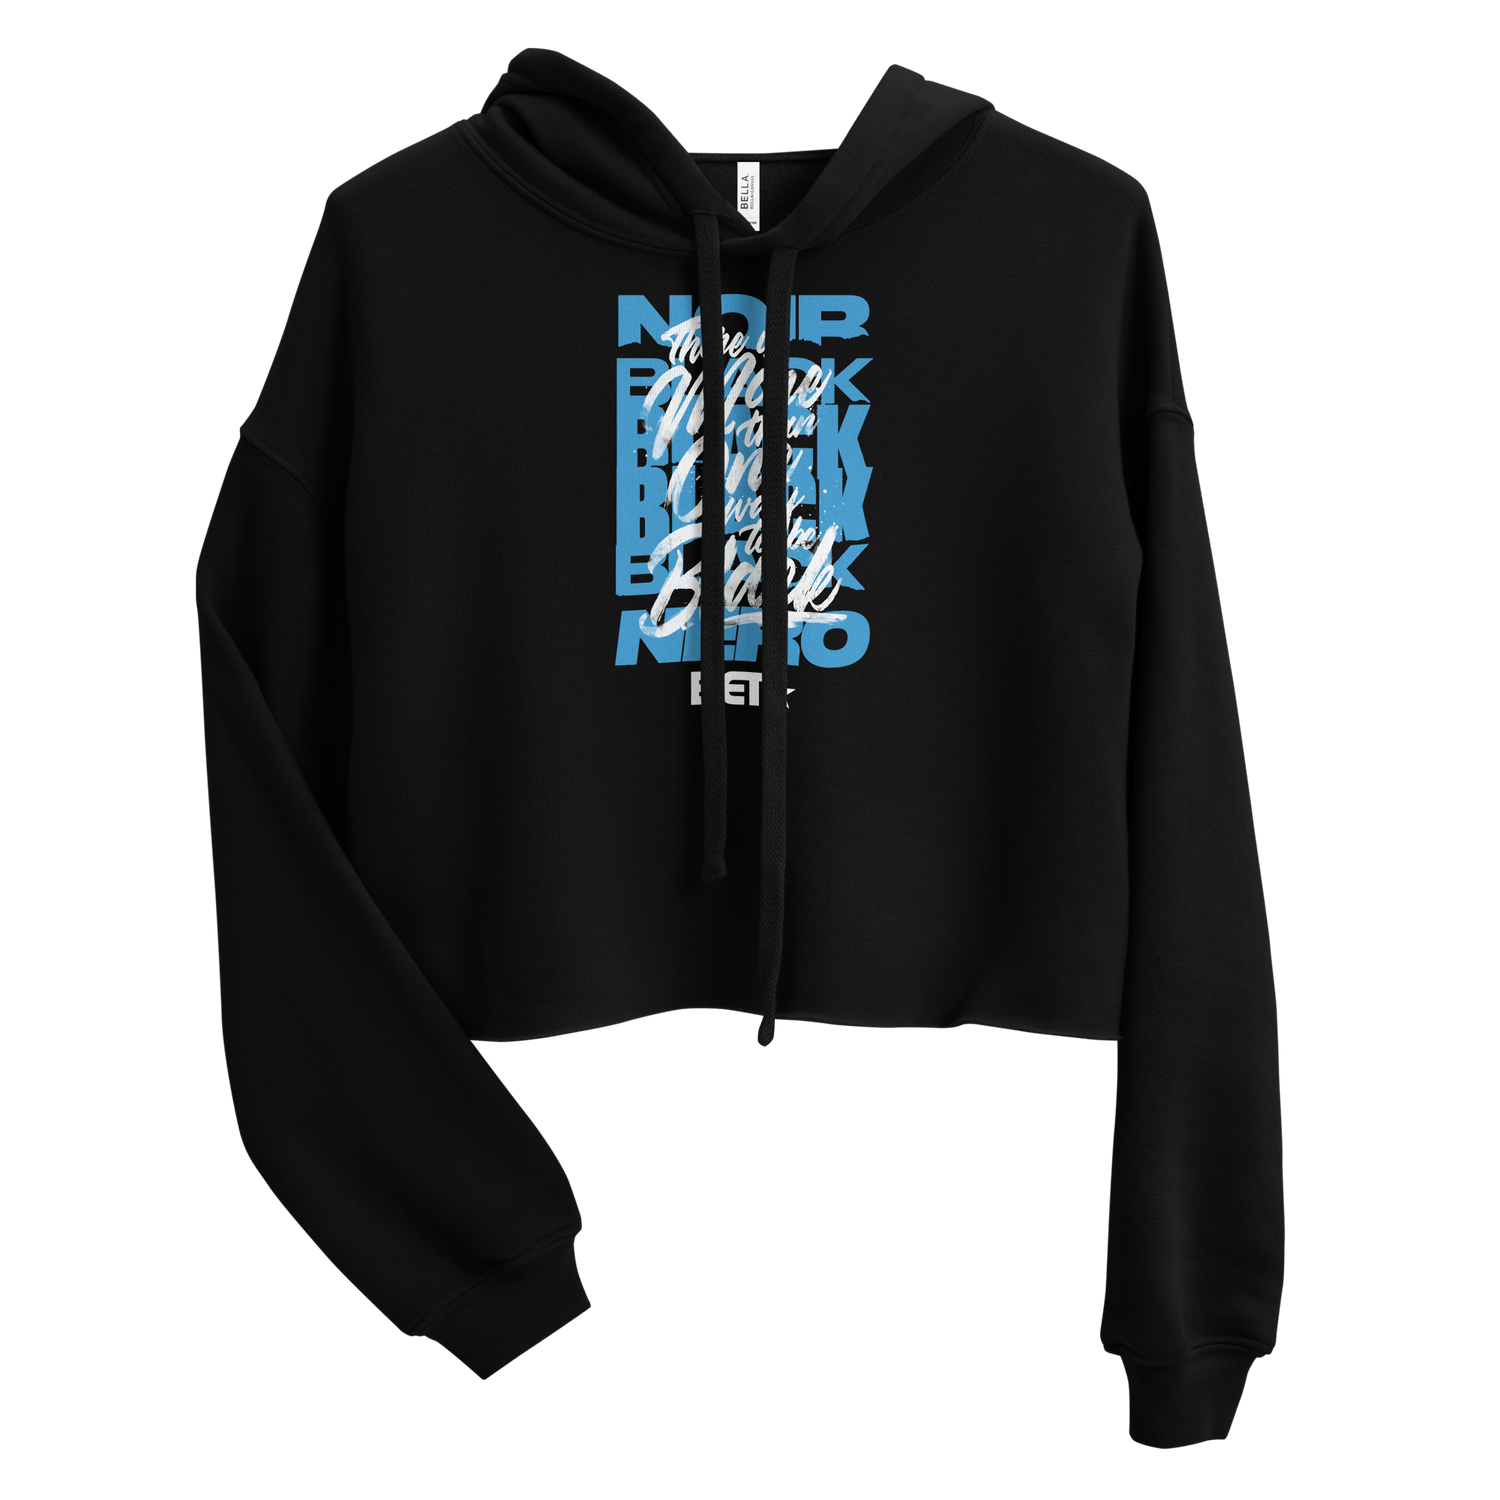 BET More Than One Way Women's Fleece Crop Hooded Sweatshirt - Paramount Shop